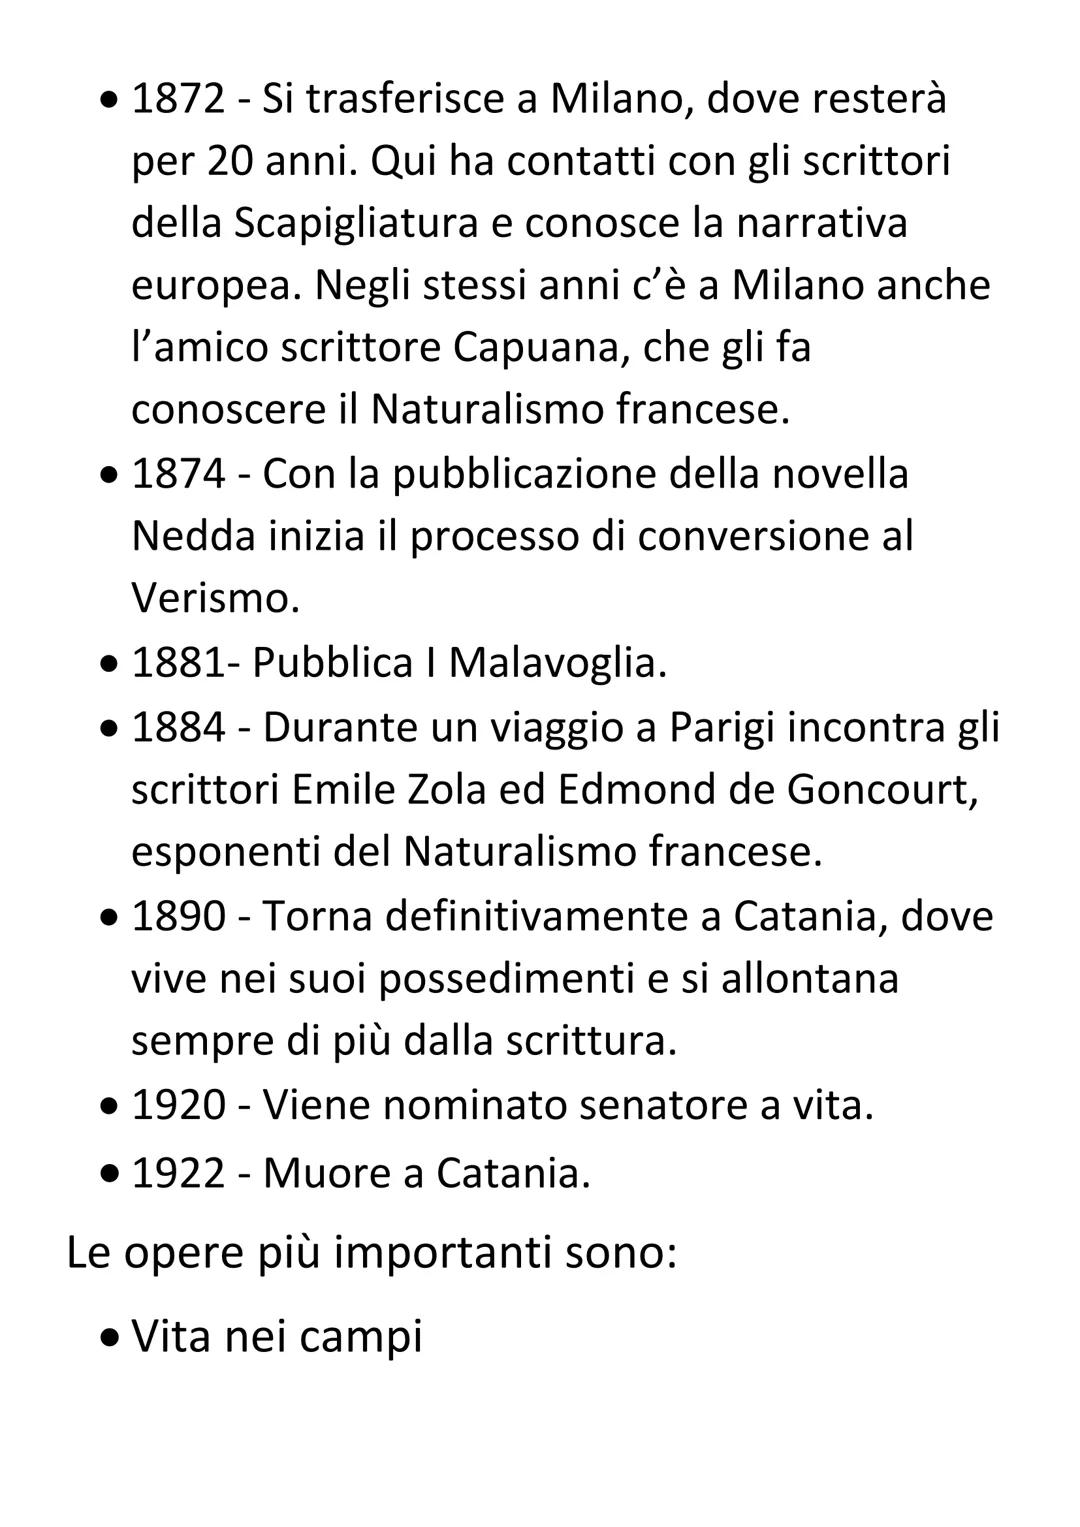 Giovanni Verga
Vita e opere
Giovanni Verga è tra i
narratori italiani più noti della
seconda metà dell'800. Fu
autore di romanzi, novelle e
